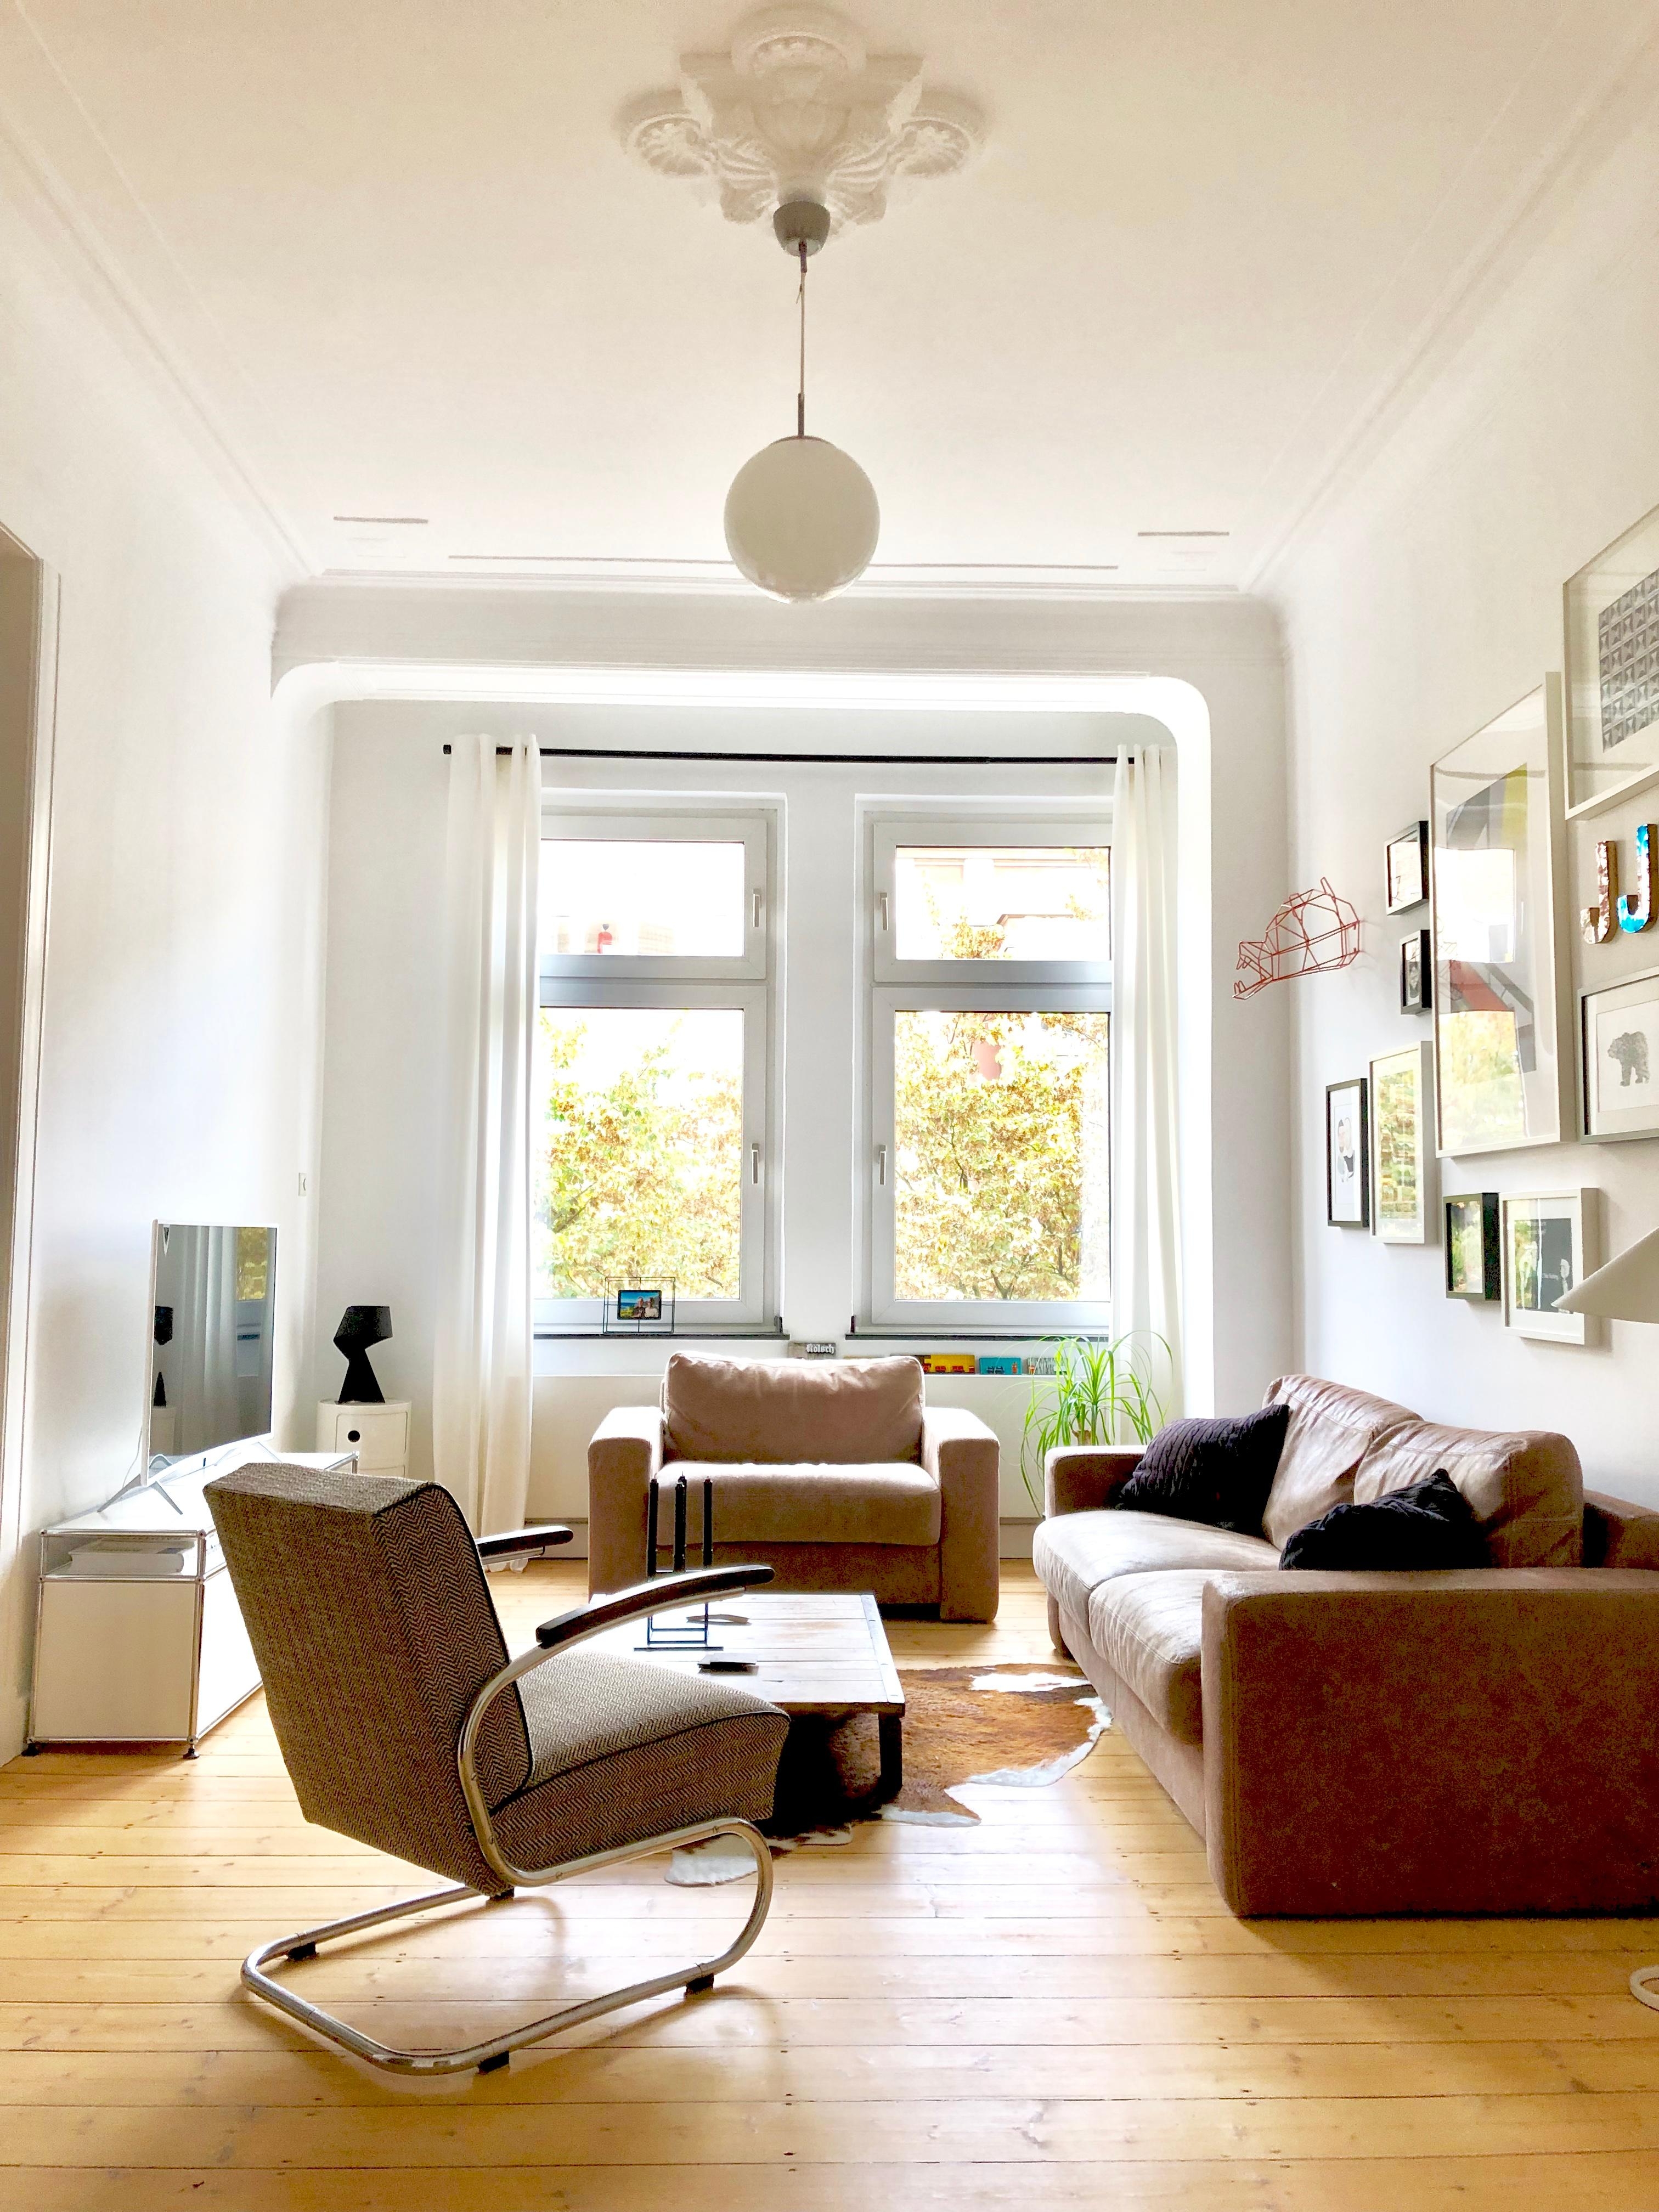 Feierabend! 🛋 #altbau #altbauliebe #wohnzimmer #livingroom #hygge #cozyhome #instahome #germaninteriorbloggers 